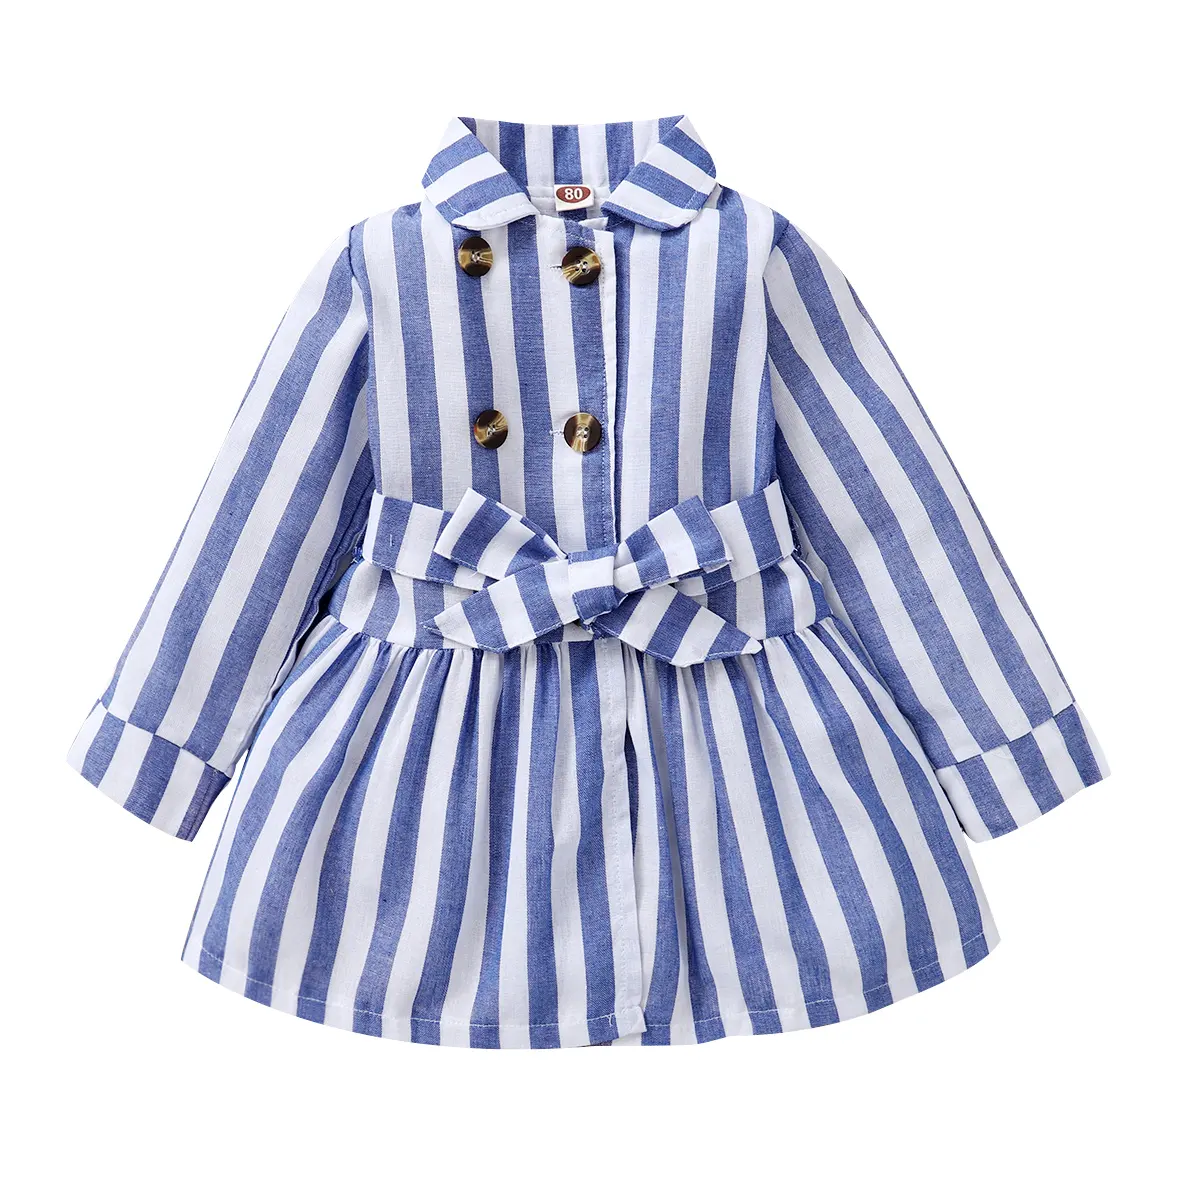 Kinder kleidung Farb kombination für blaue Mädchen Streifen kleid Herbst Baby Kleid